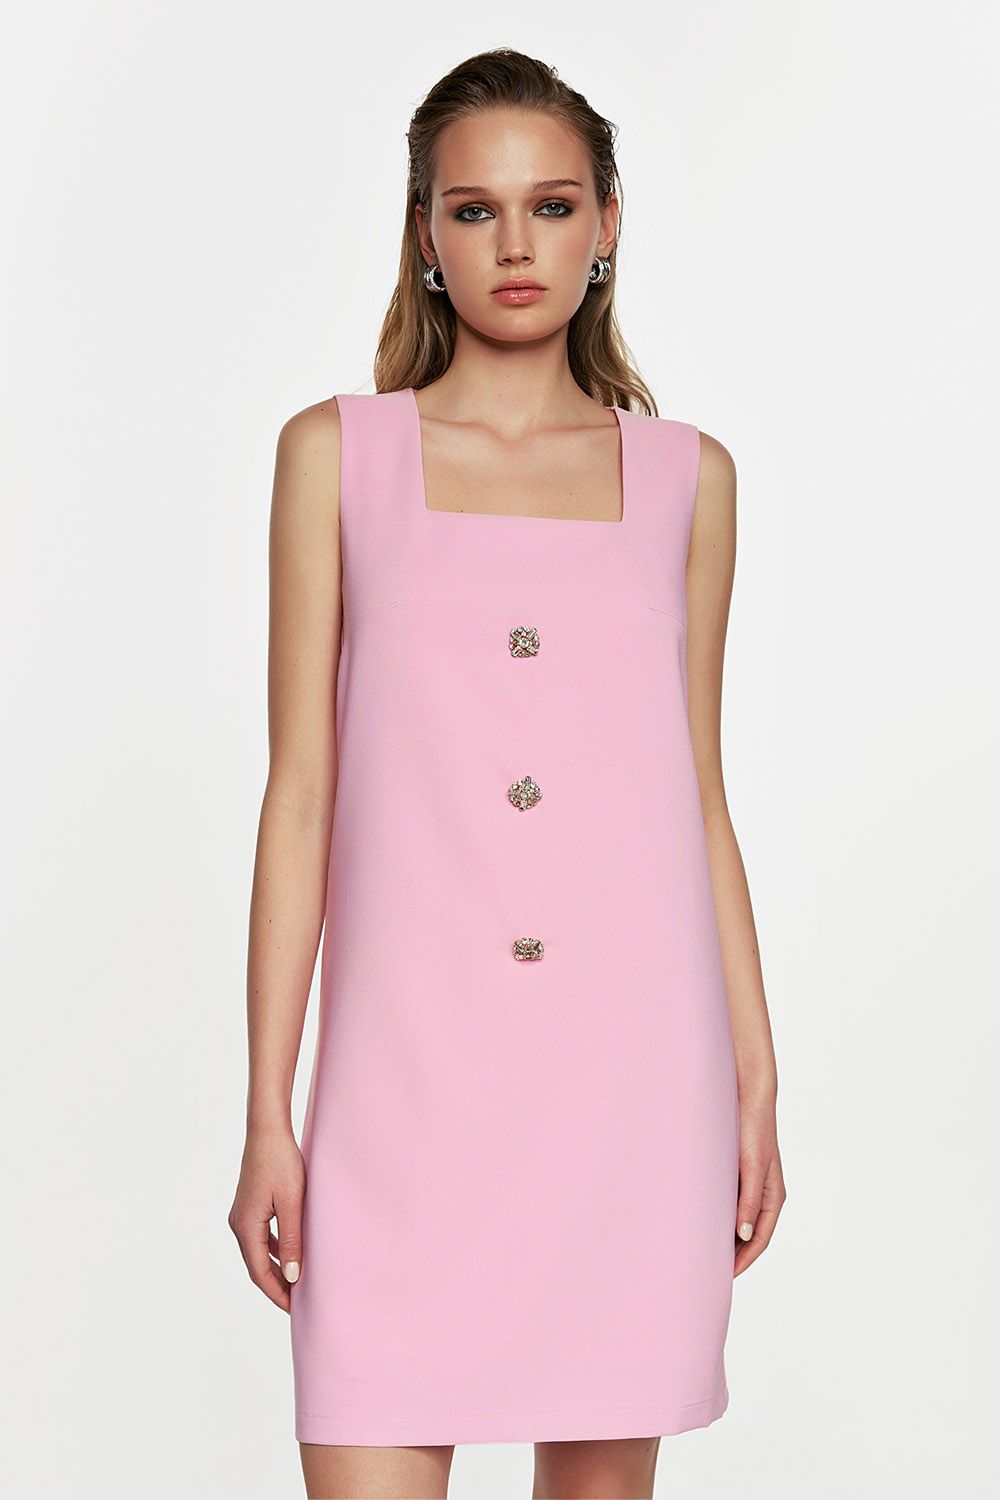 Ρόζ αμάνικο μίνι φόρεμα με στρασένια κουμπιά